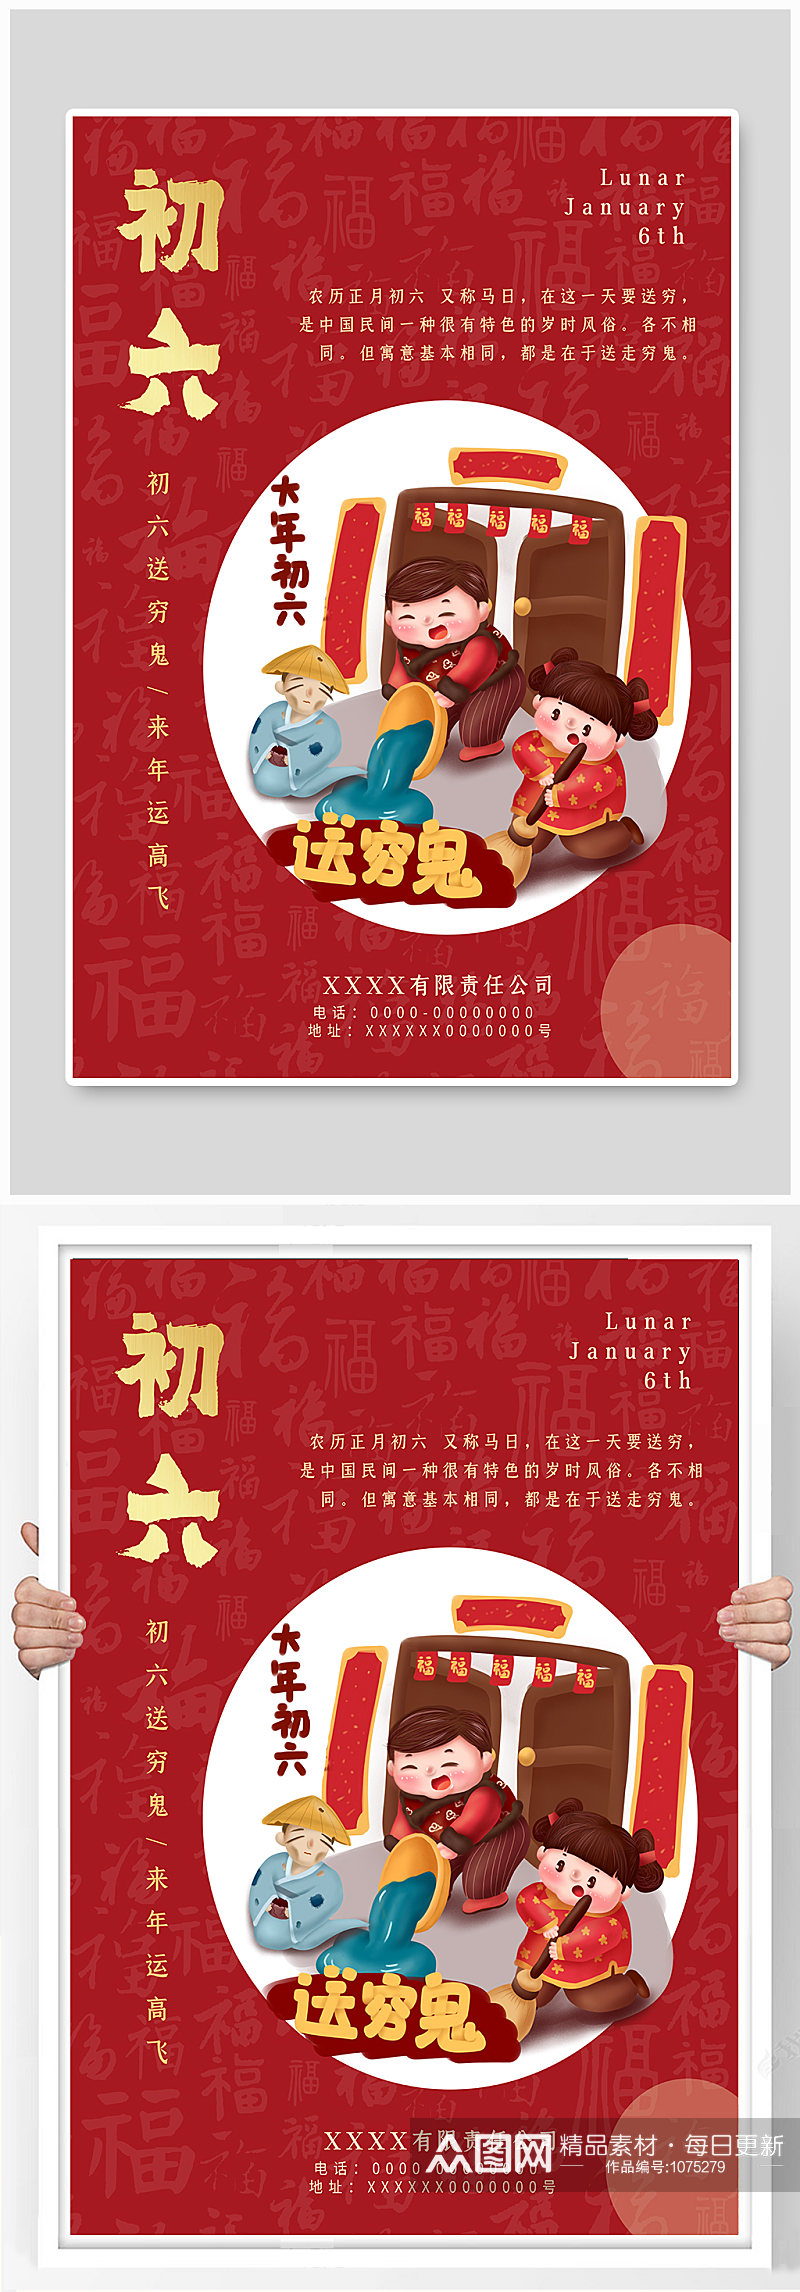 正月初六送穷神春节拜年红色喜庆节日海报素材